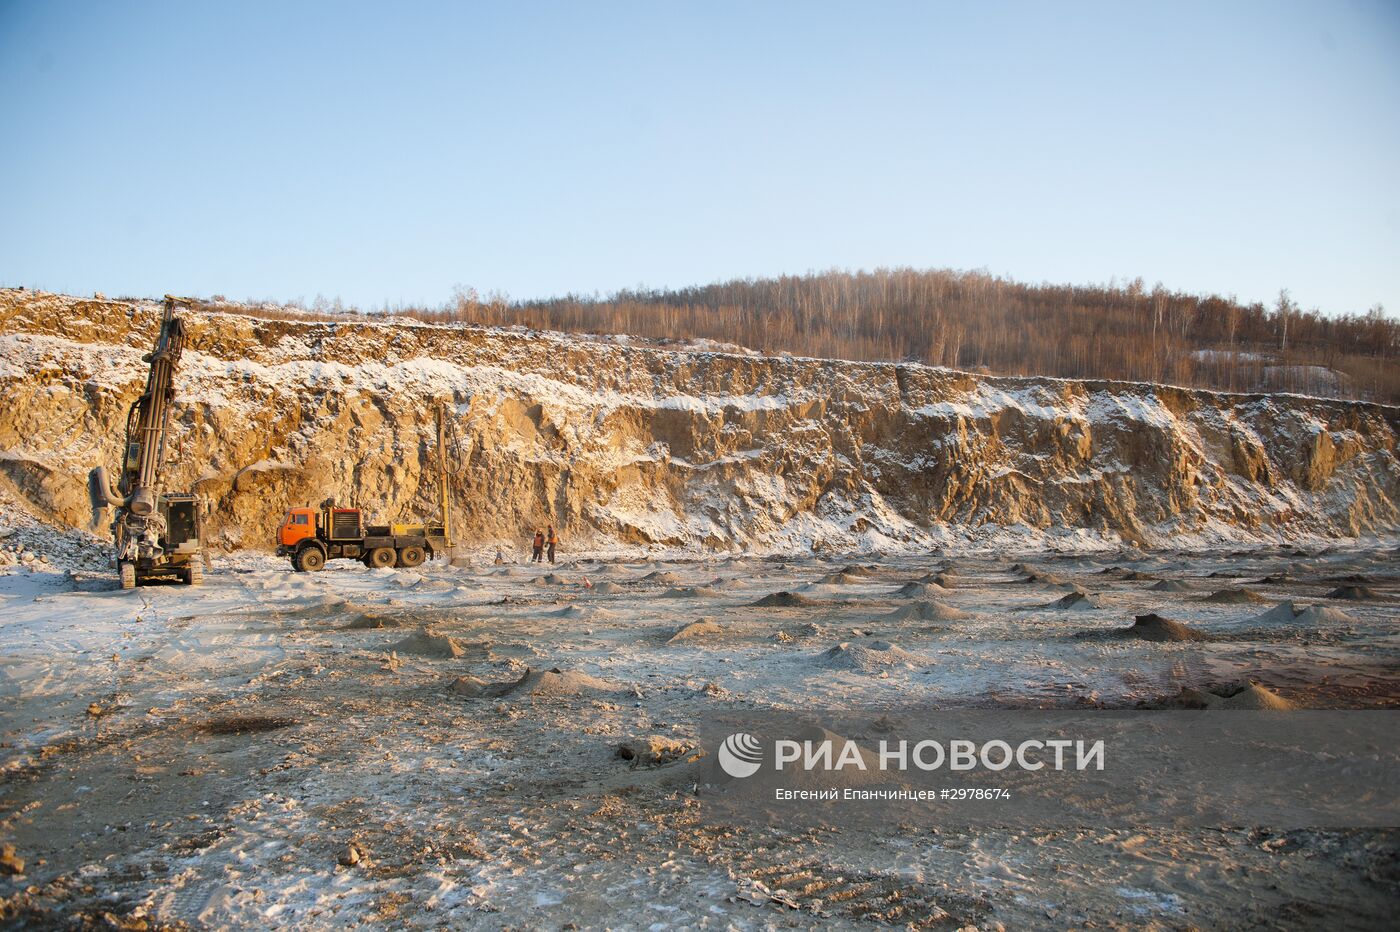 Месторождение золота "Савкинское" в Забайкальском крае